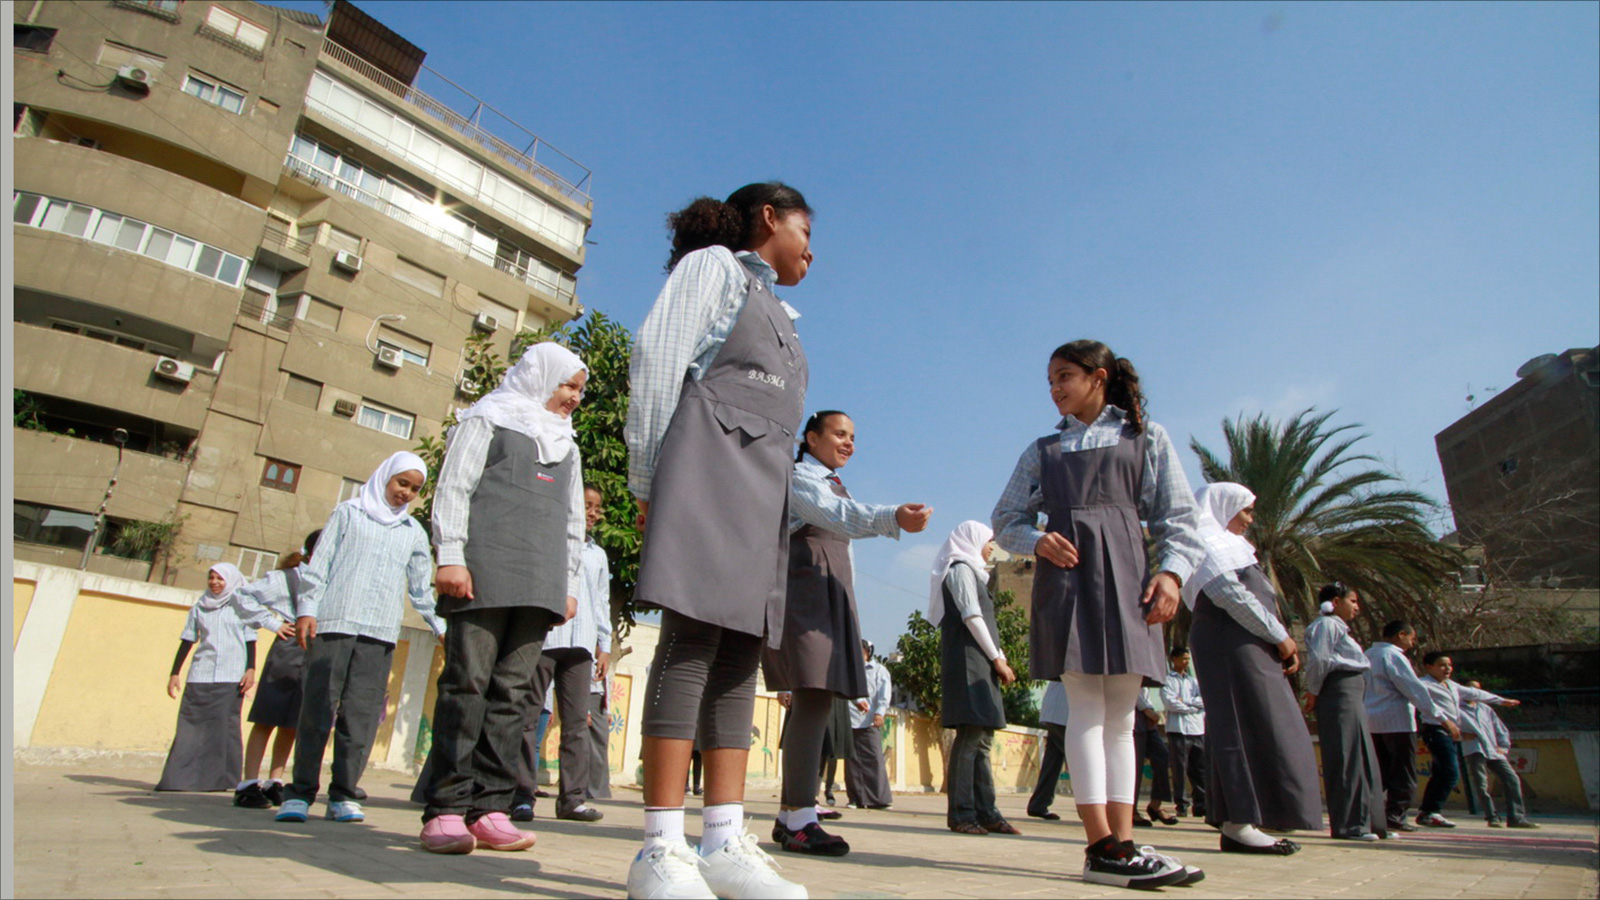 ارتفاع النفقات التعليمية حمل الأسر المصرية أعباء فوق ما تعانيه بسبب الأوضاع الاقتصادية (الجزيرة)